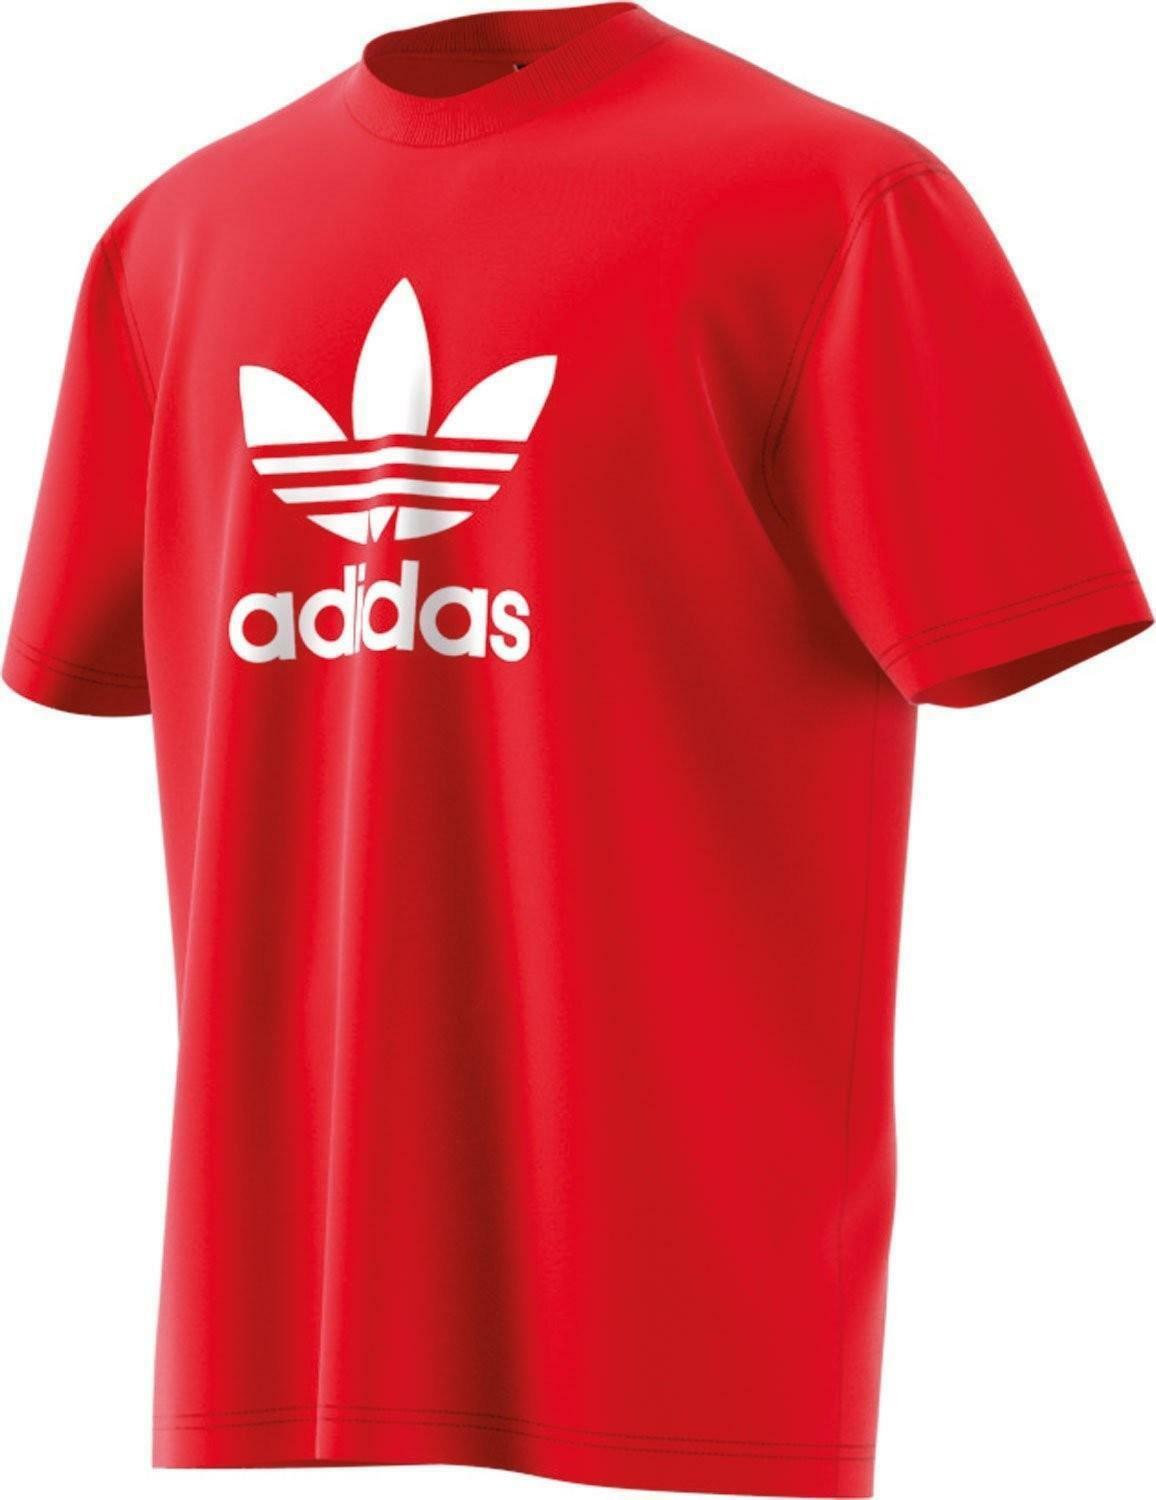 adidas originals adidas originals trefoil t-shirt uomo rossa cx1895